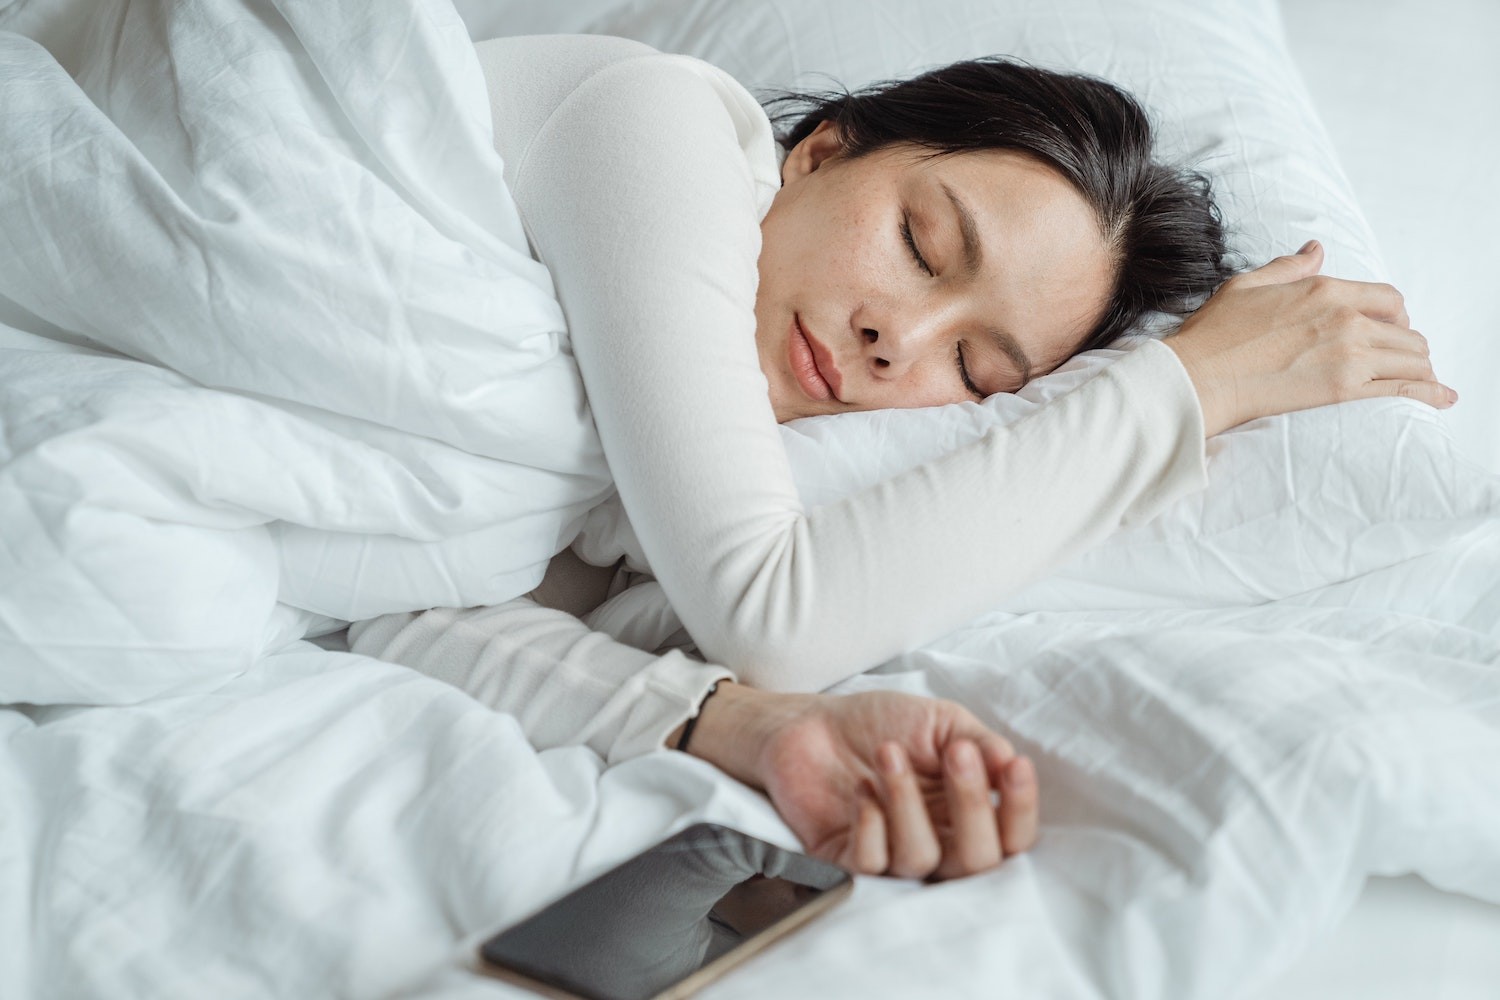 Especialistas recomendam que aparelhos eletrônicos sejam desligados e o ambiente esteja totalmente escuro para um bom sono (Foto: Pexels /  Ketut Subiyanto / CreativeCommons)